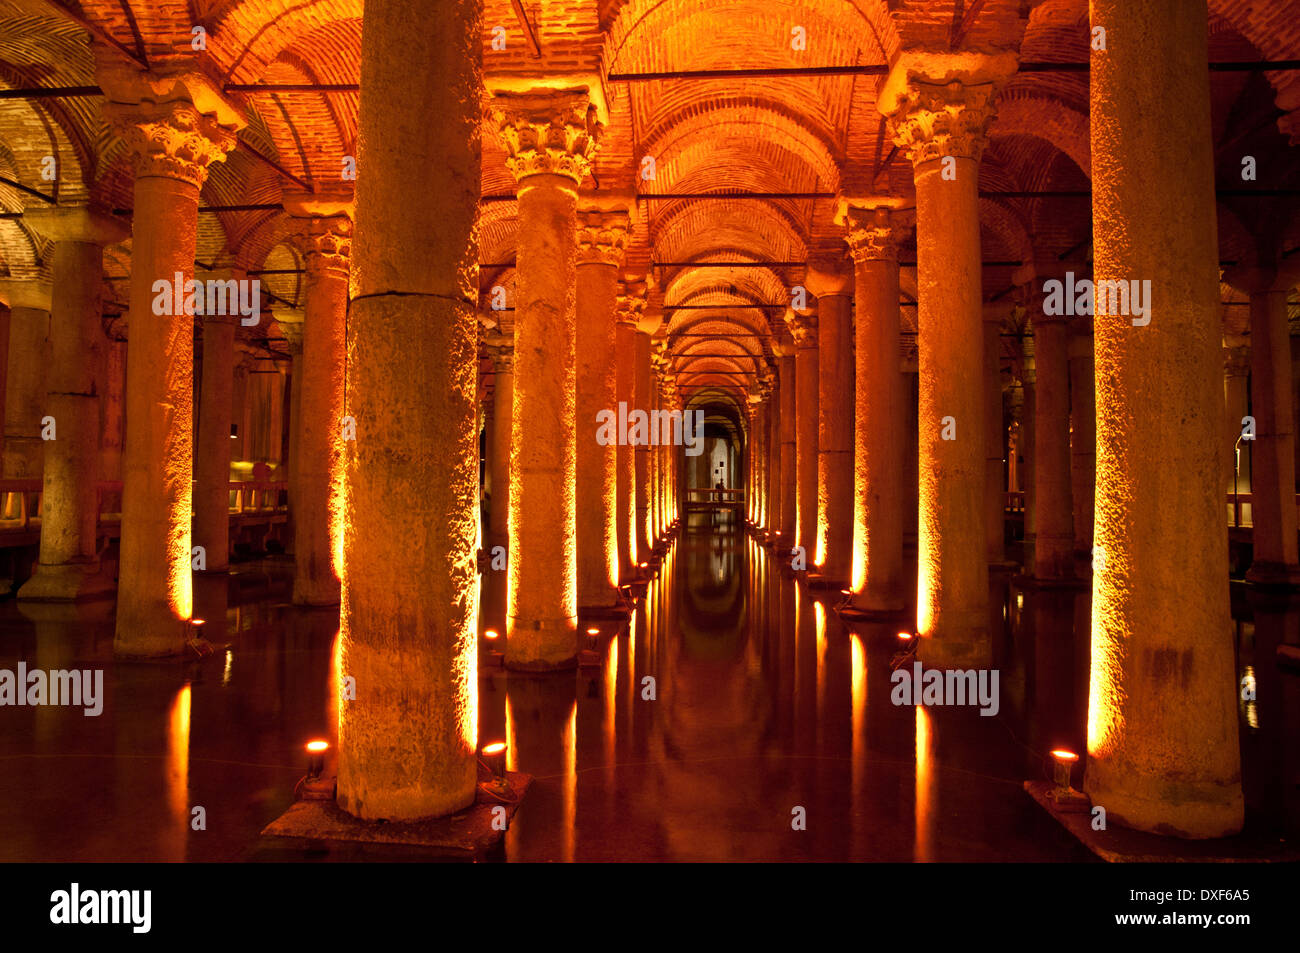 Interno dell'antica Basilica Cisterna (Yerebatan Sarnici o Cisterna Sunken) ad Istanbul in Turchia. Foto Stock